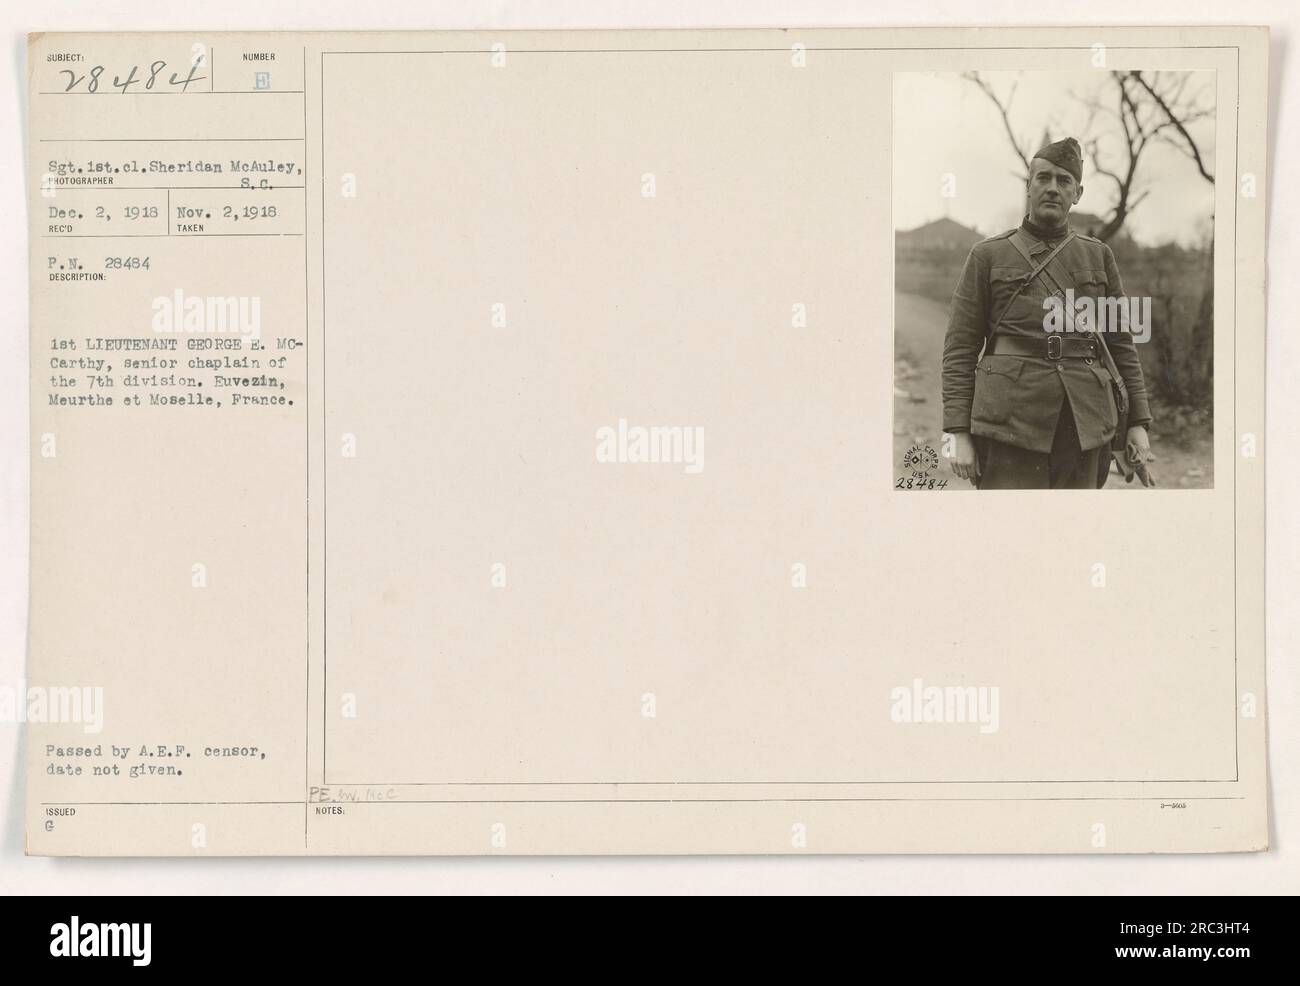 Bildunterschrift: Sgt. 1.cl. Sheridan McAuley hat dieses Foto am 2. Dezember 1918 in Euvezin, Meurthe et Moselle, Frankreich, aufgenommen. Das Bild zeigt 1. Leutnant George E. McCarthy, leitender Kaplan der 7. Division. Dieses Foto wurde vom A.E.F.-Zensor genehmigt, aber das genaue Datum ist unbekannt. Stockfoto